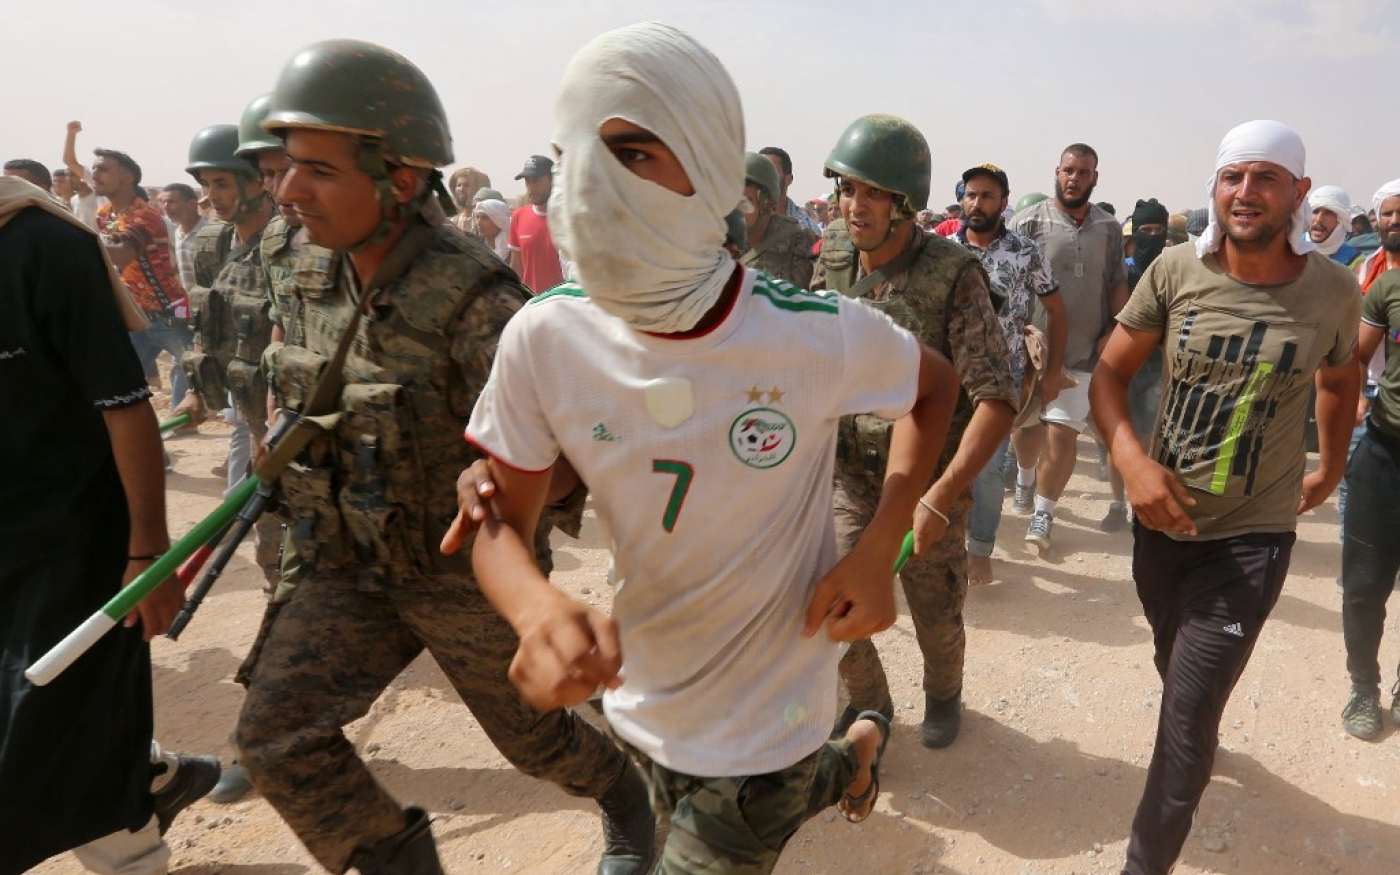 Des manifestants entrent sur un site de production de pétrole malgré les forces militaires à El Kamour, dans le sud du pays, le 16 juillet 2020 (AFP)